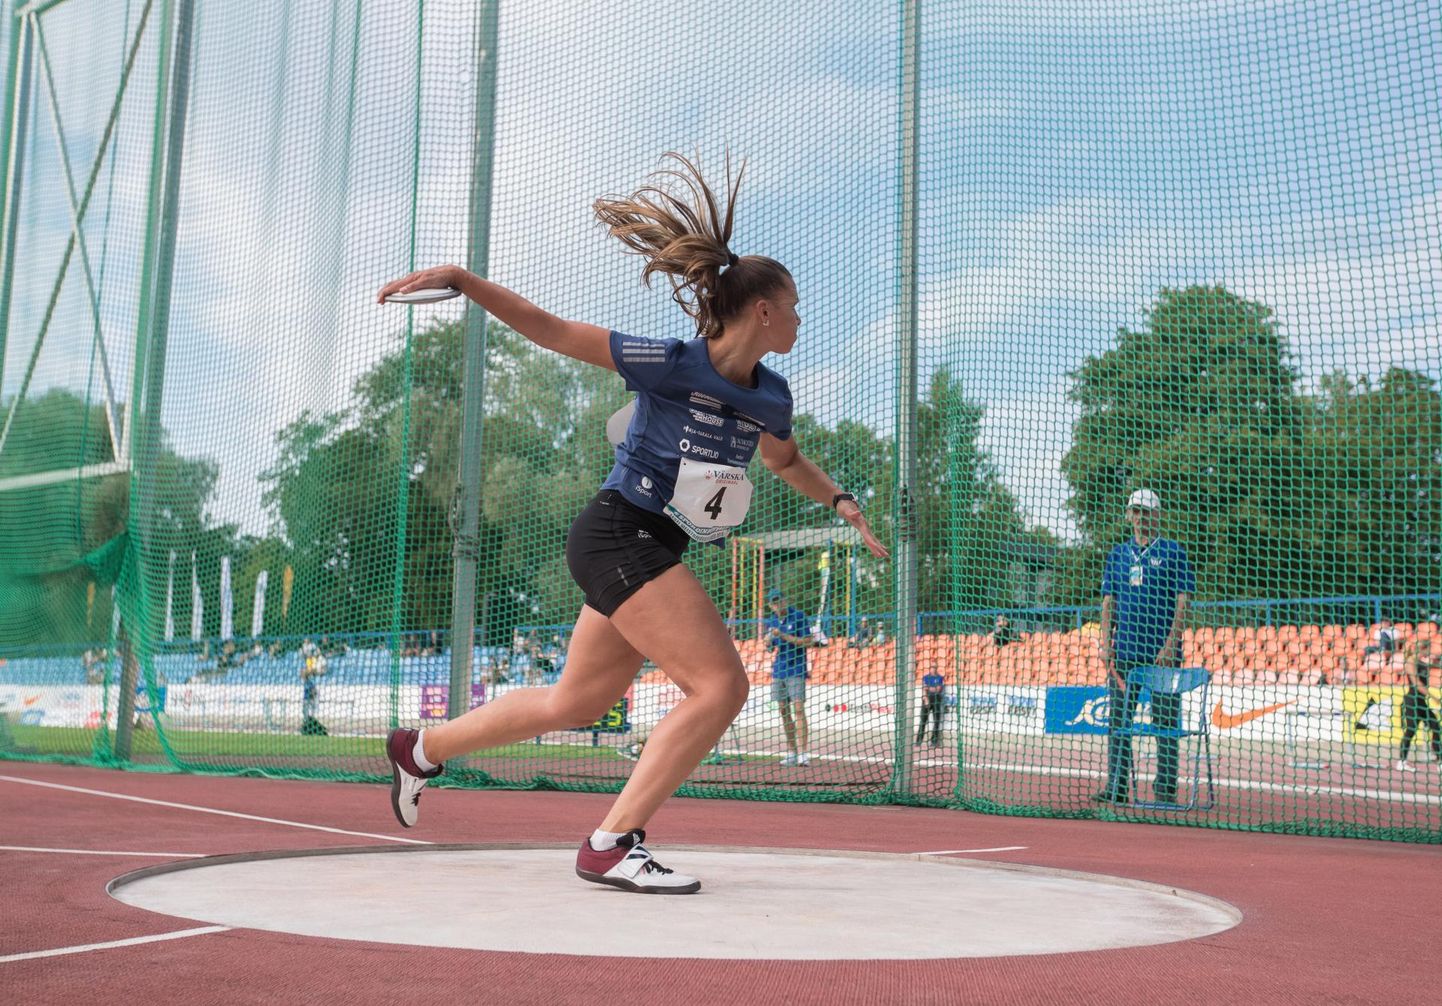 Naiste kettaheites teenis Eesti meistri tiitli Audentese spordiklubi esindaja, Viljandist pärit Kätlin Tõllasson, kes lennutas tulemuseks 56.62.